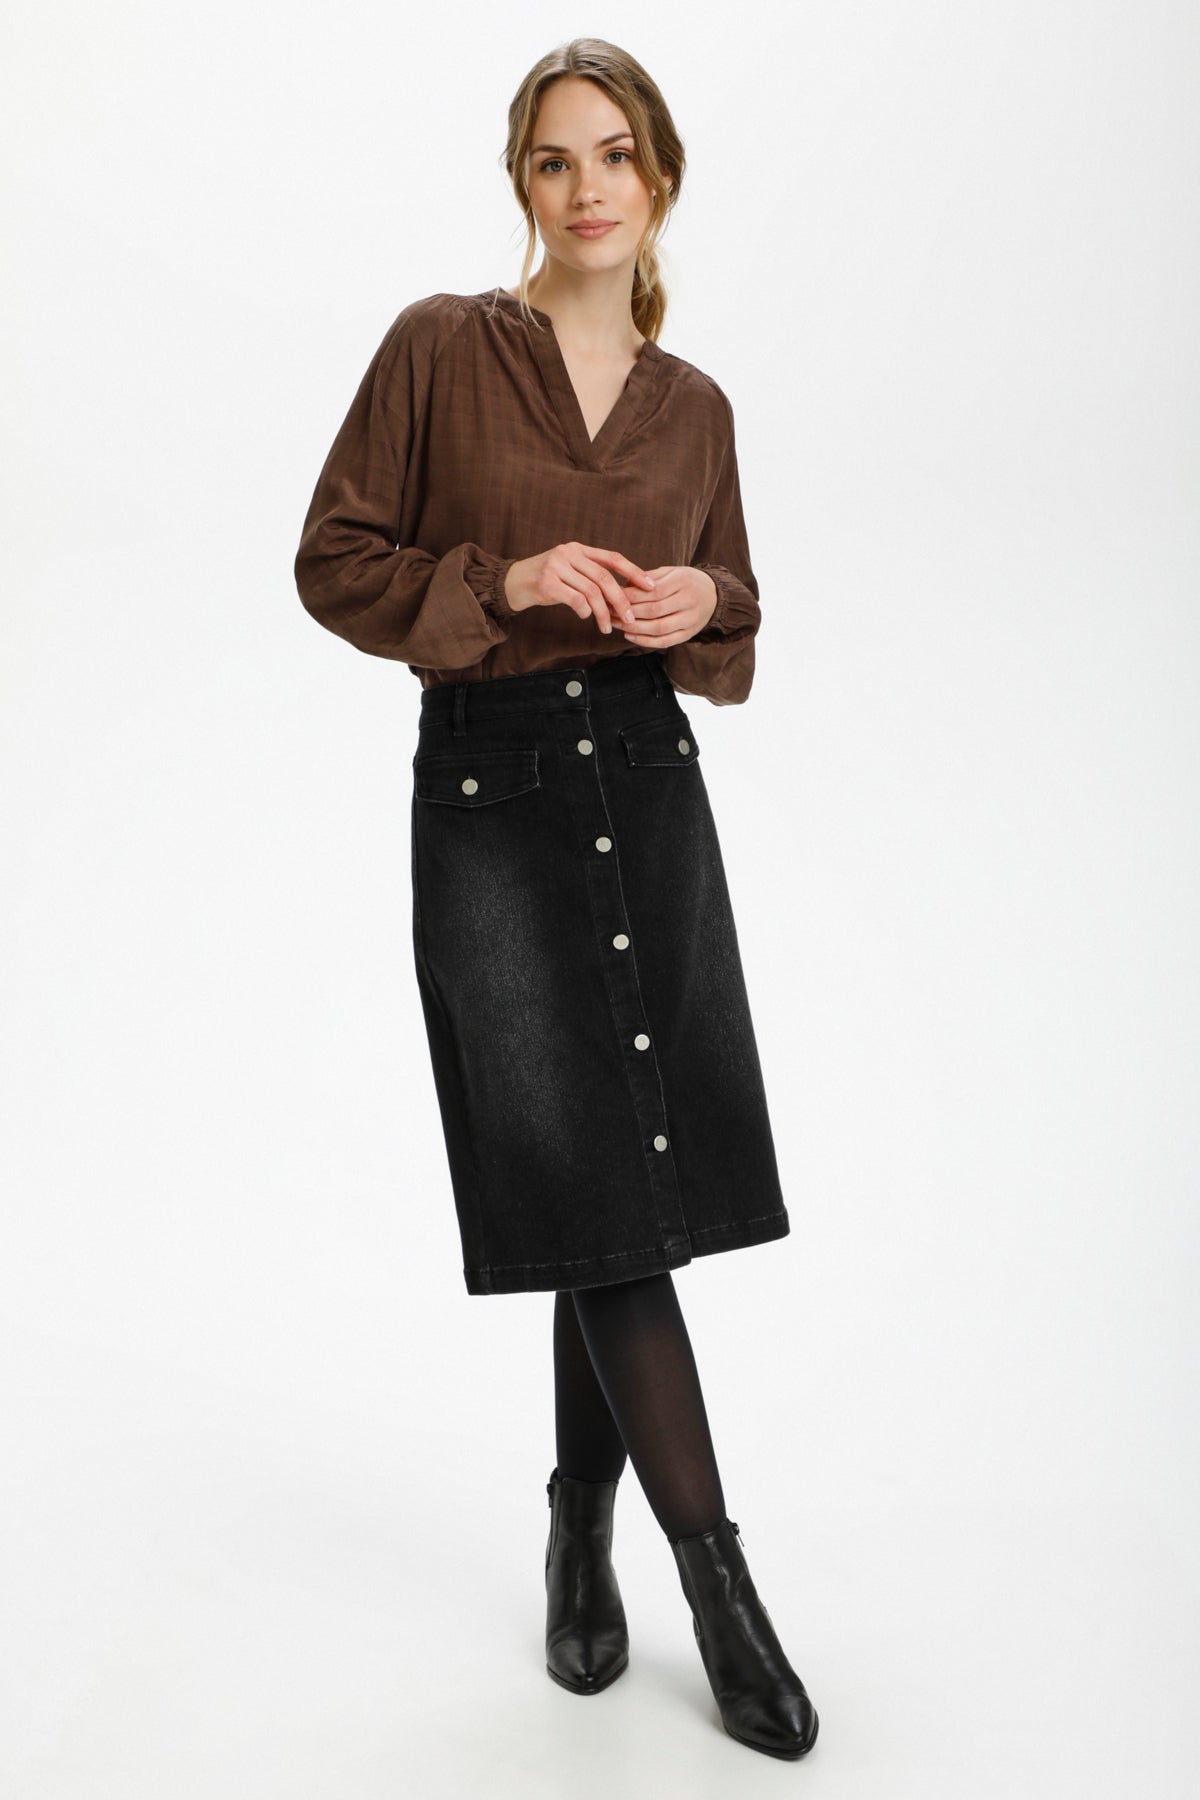 Denim Long Maxi Skirts Women | Denim High Waist Long Skirt | Black Denim  Skirt Long - Skirts - Aliexpress